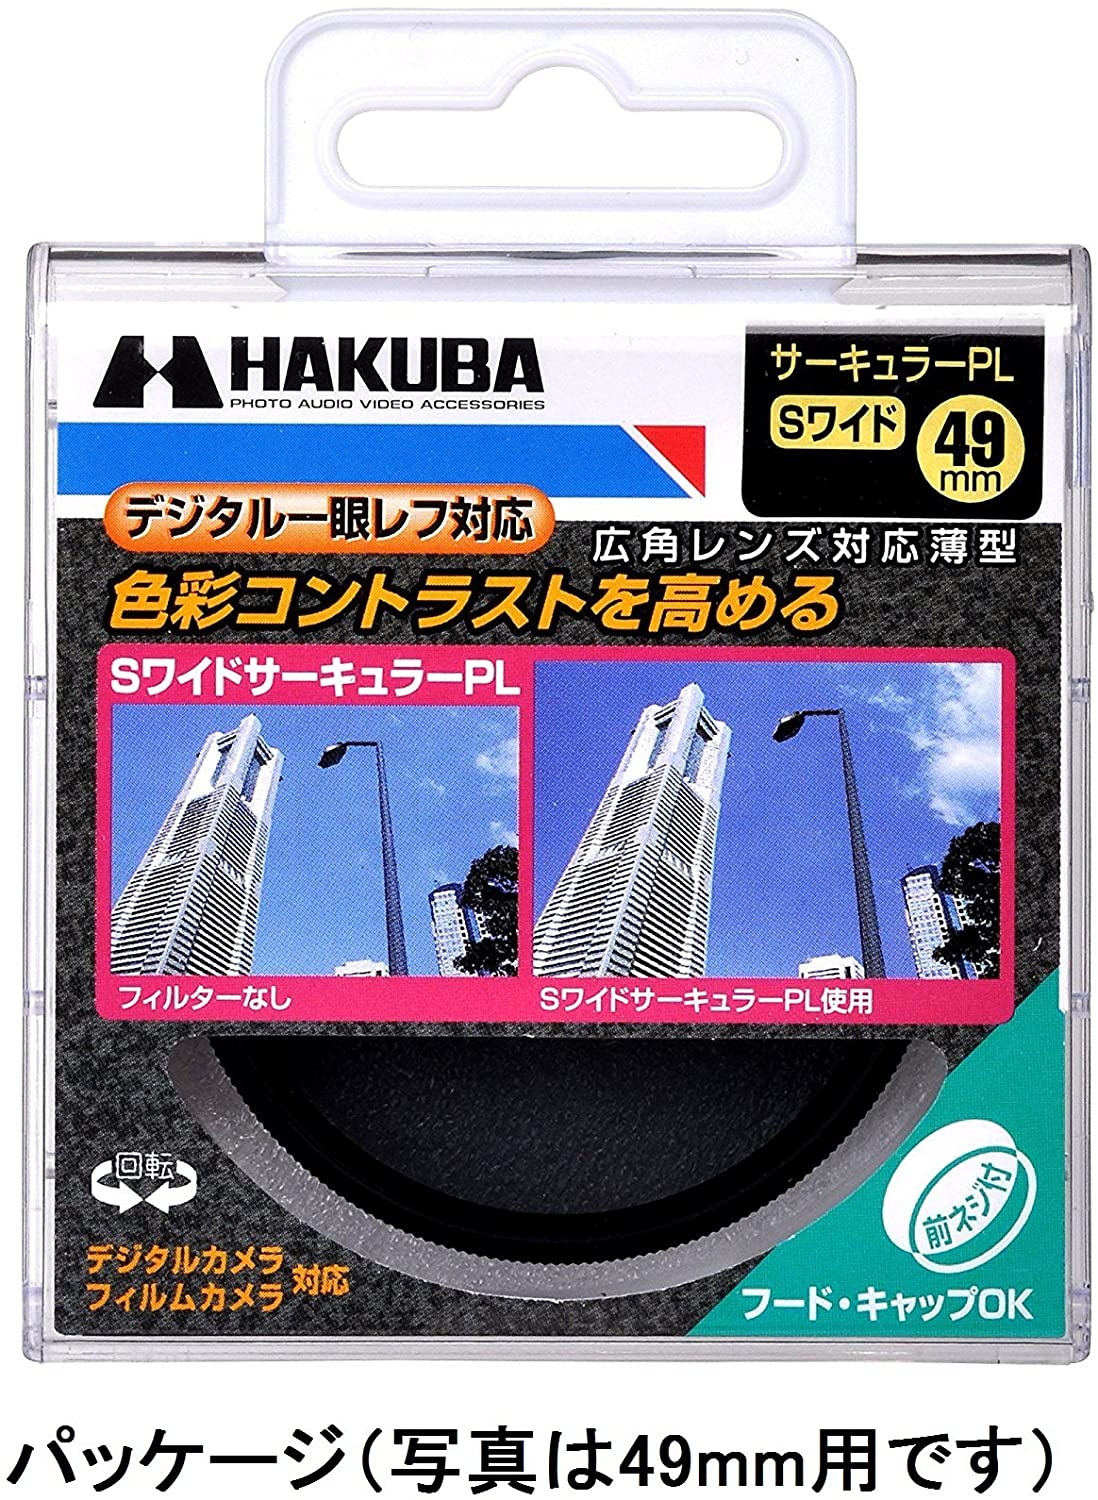 Hakuba_sワイドサーキュラー